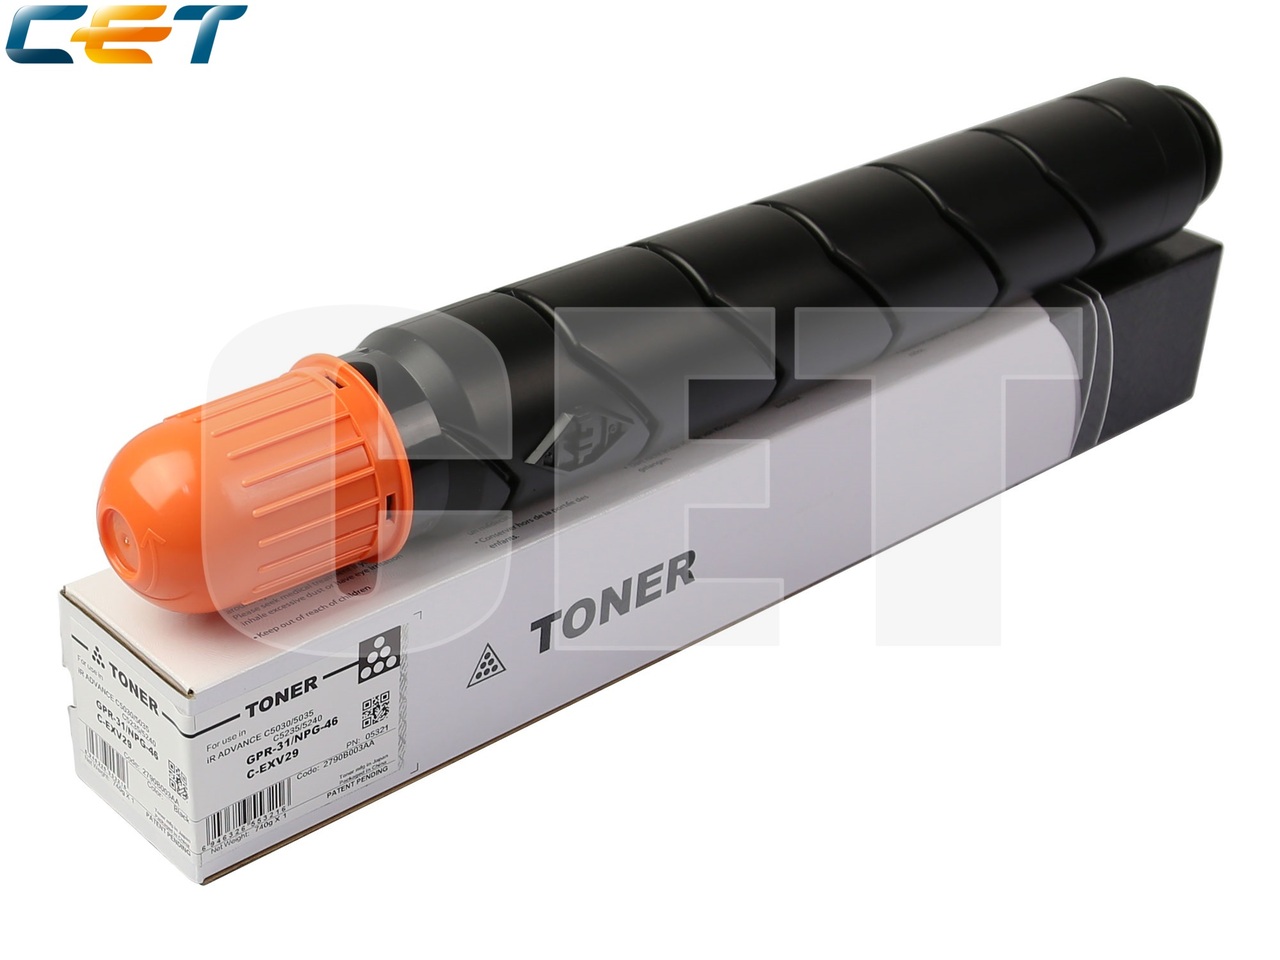 Тонер-картридж (CPP) для CANON iR ADVANCE C5030 (CET)Black, 740г, CET5321